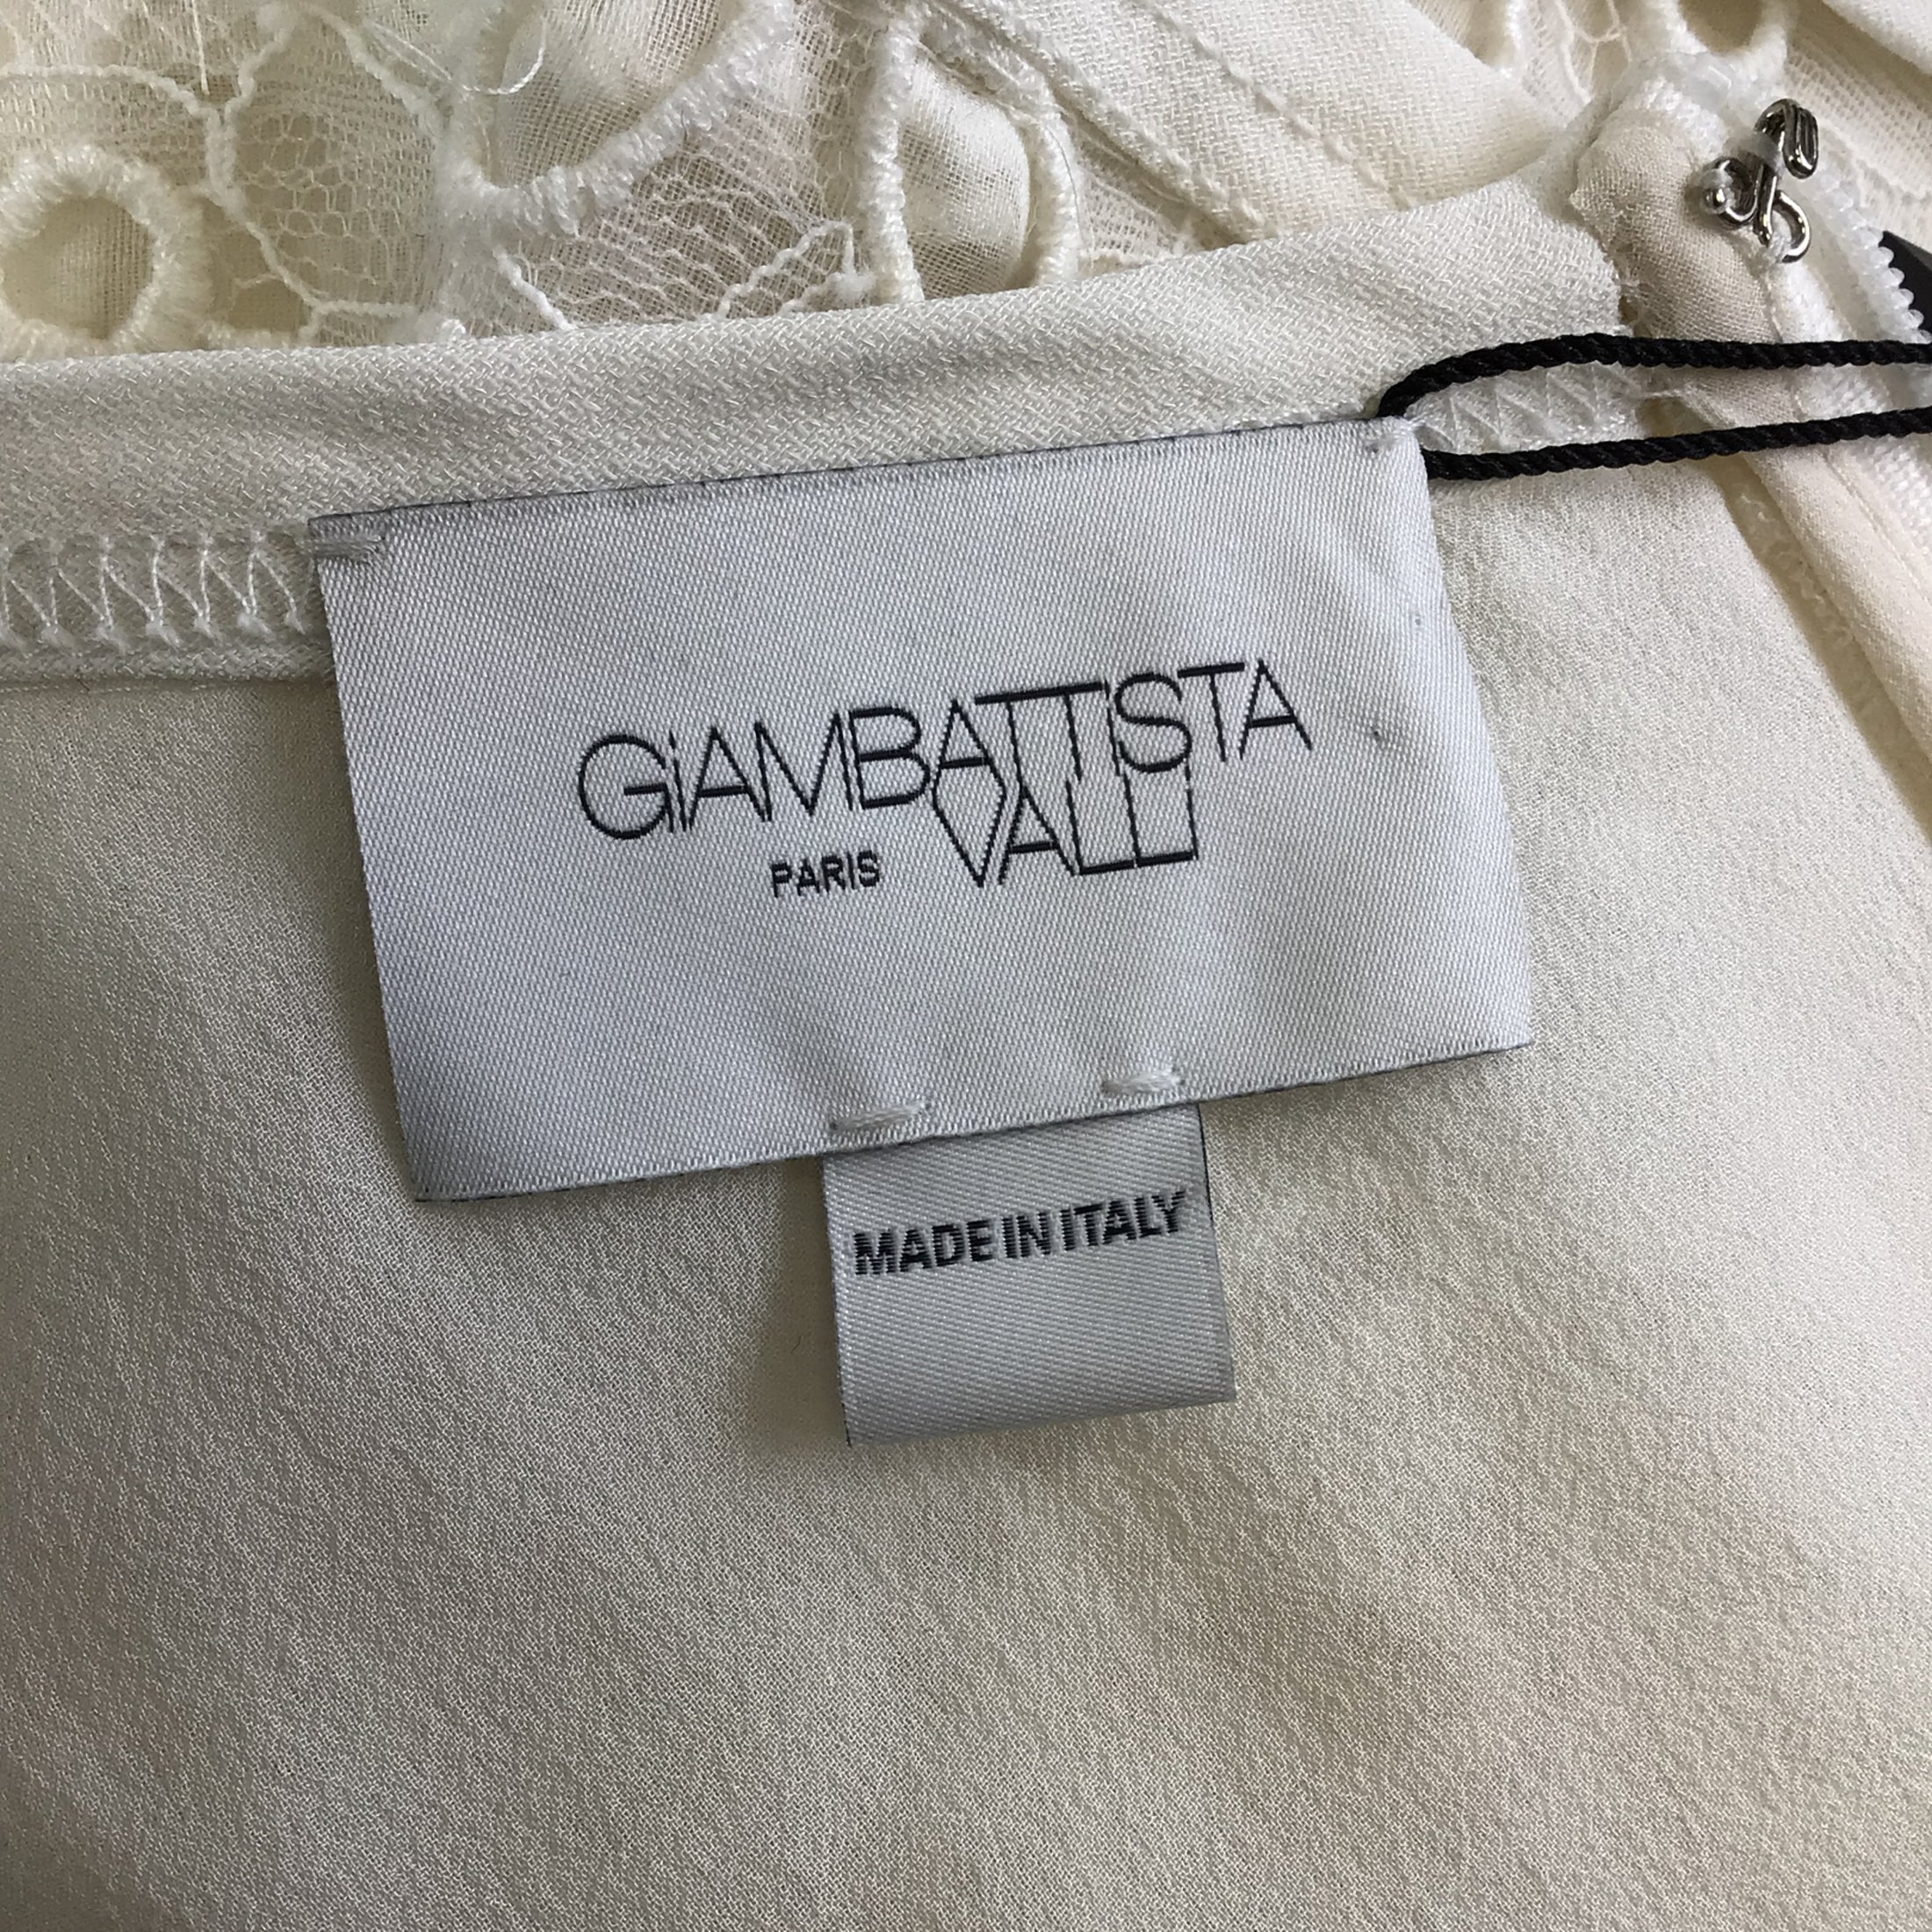 Giambattista Valli White Sleeveless Embroidered Lace Midi Dress